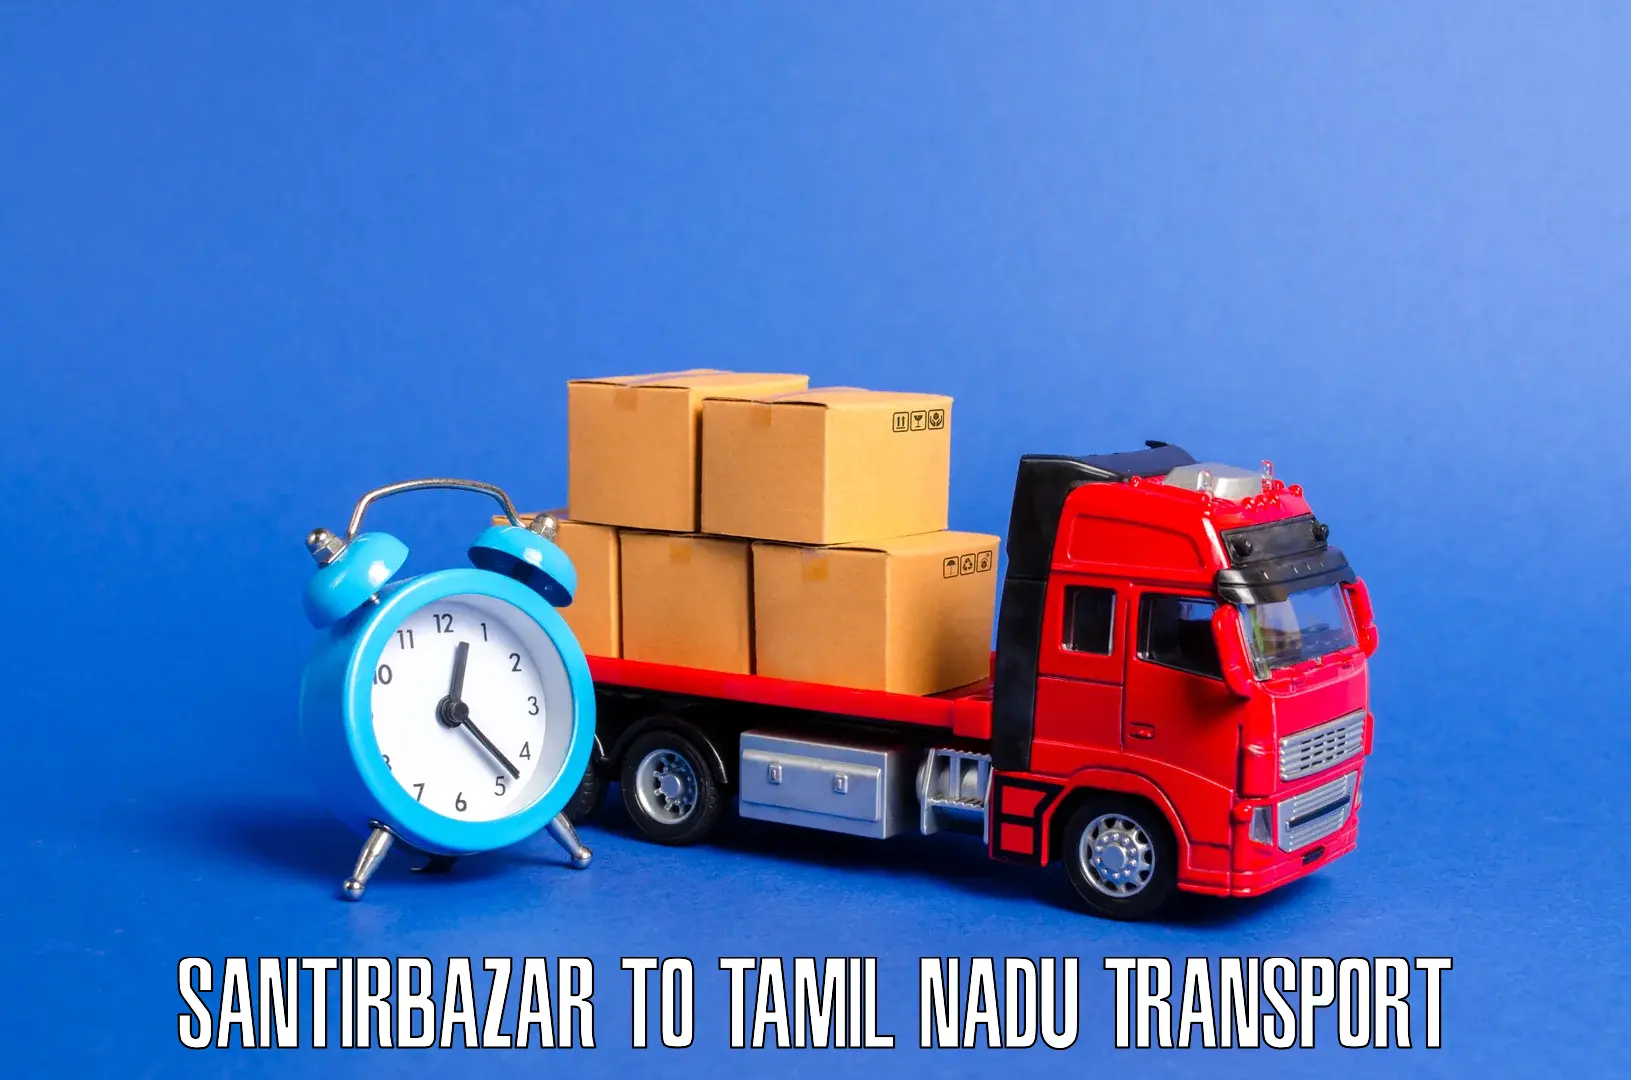 All India transport service Santirbazar to The Gandhigram Rural Institute